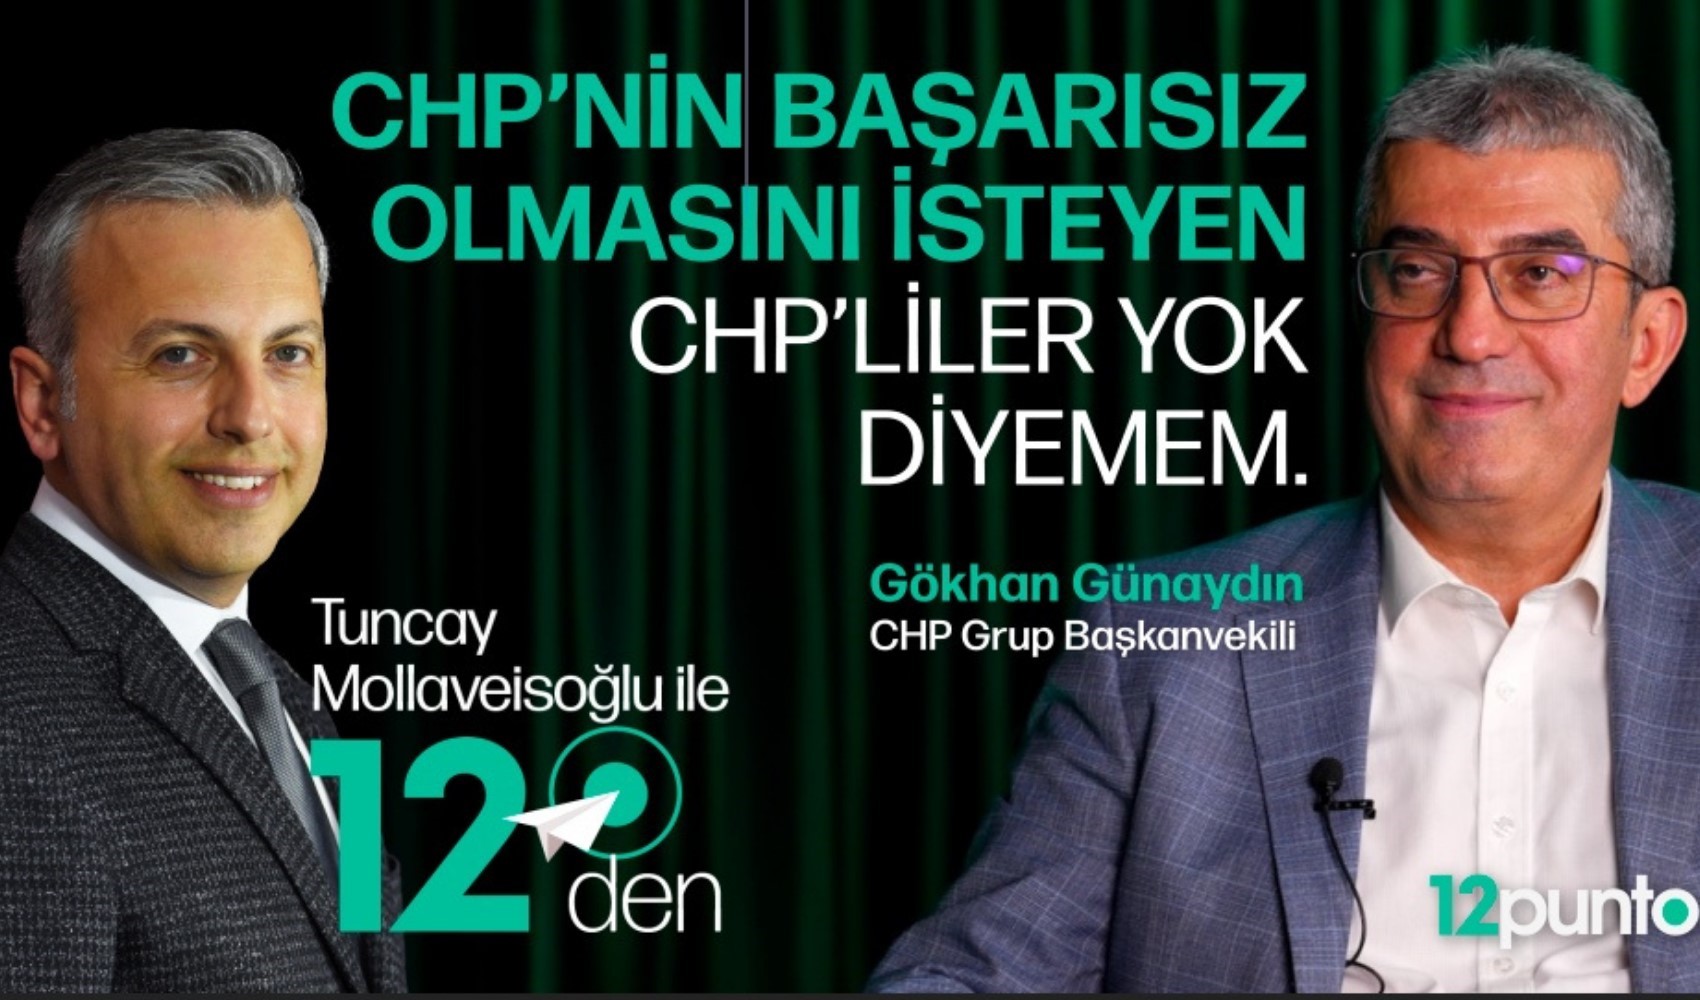 Tuncay Mollaveisoğlu, CHP Grup Başkanvekili Gökhan Günaydın'ı ağırladı: Özel ile İmamoğlu birbirine kırgın mı?